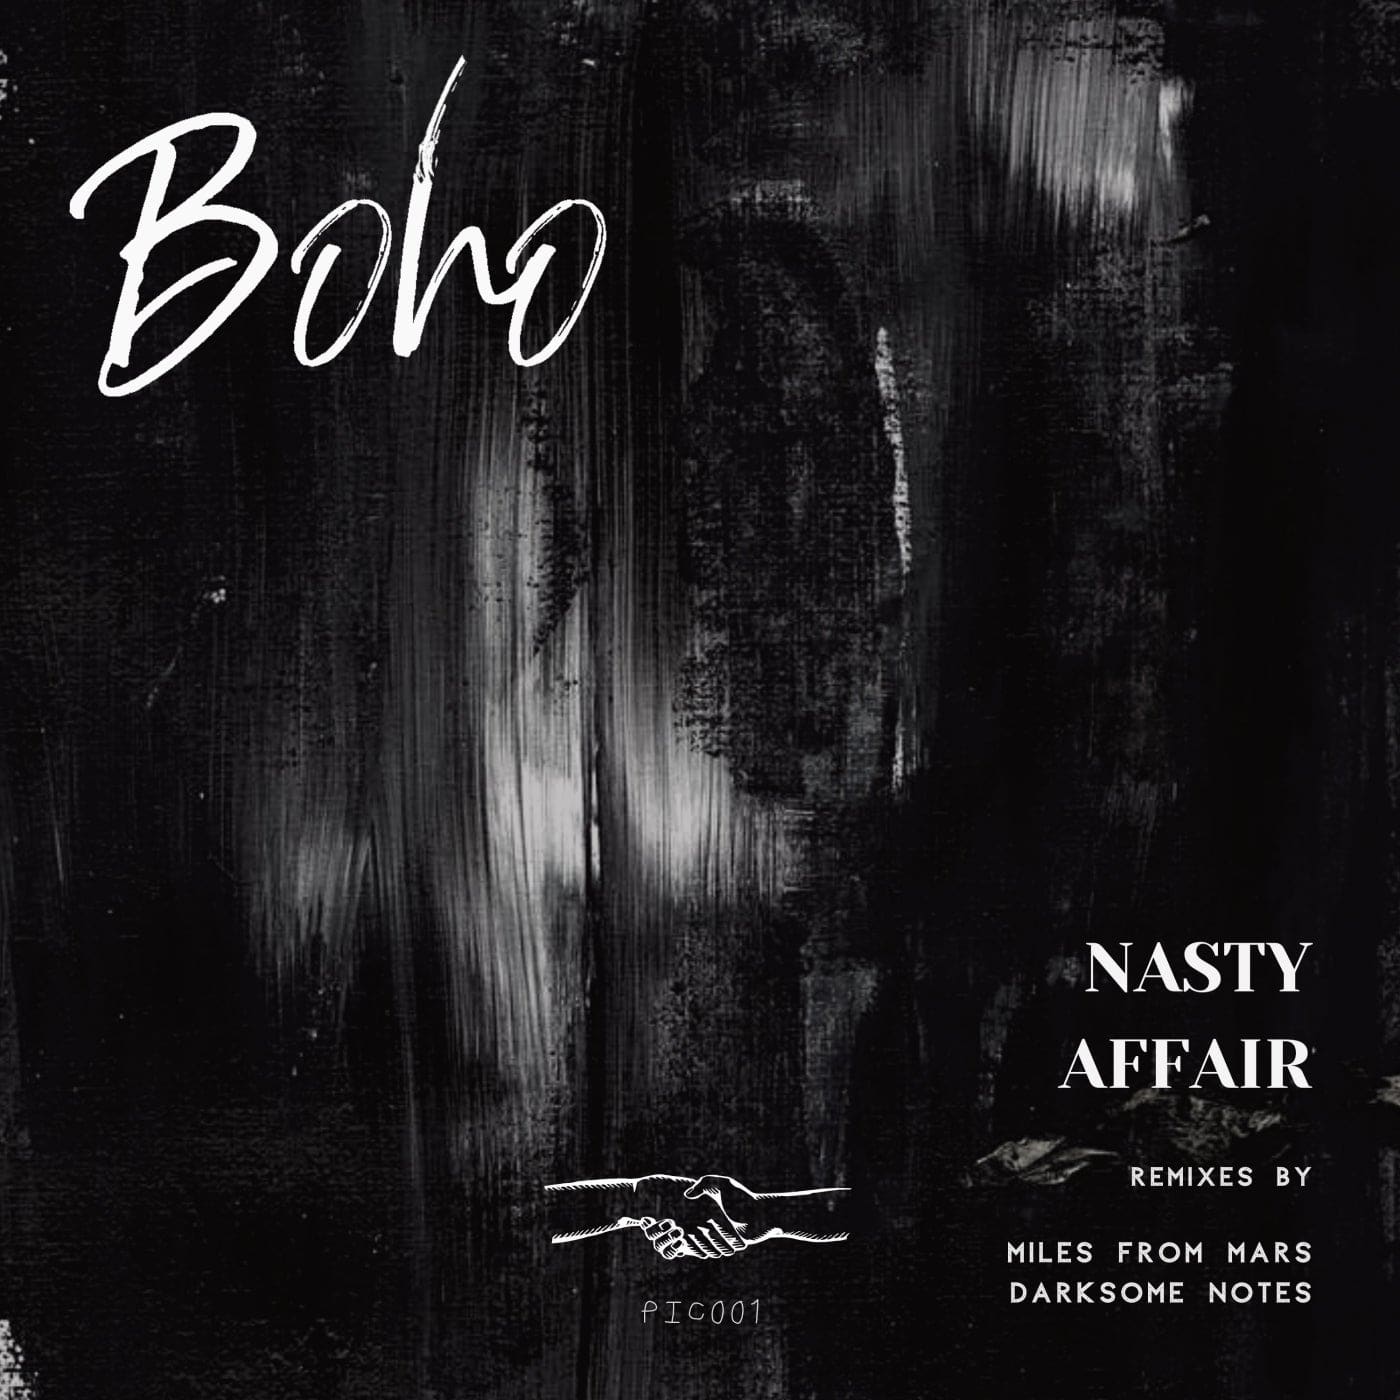 image cover: BOHO - Nasty Affair / PIC001